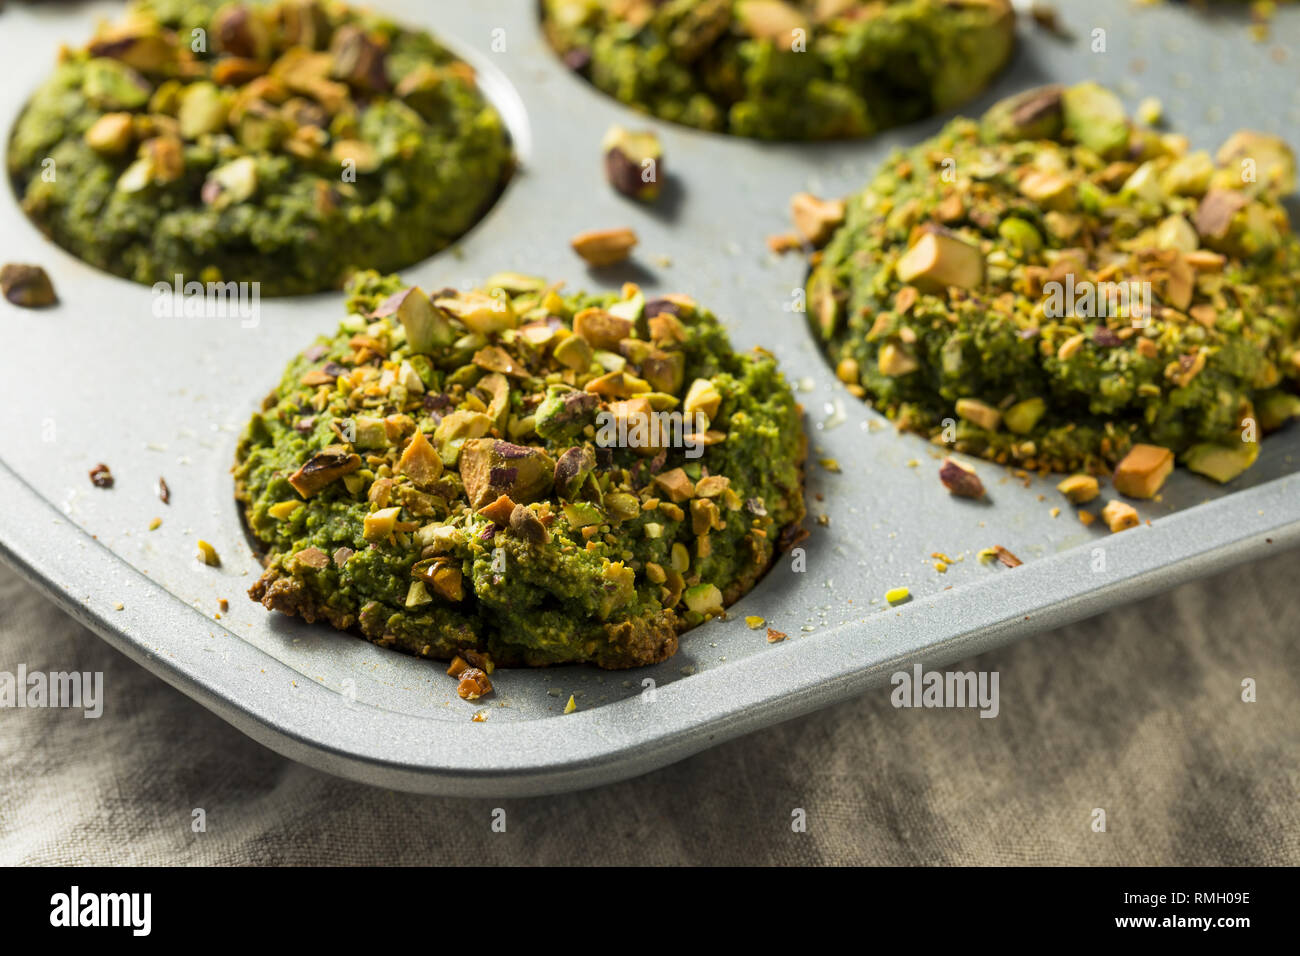 Matcha verde pistacho muffins caseros listos para comer Foto de stock